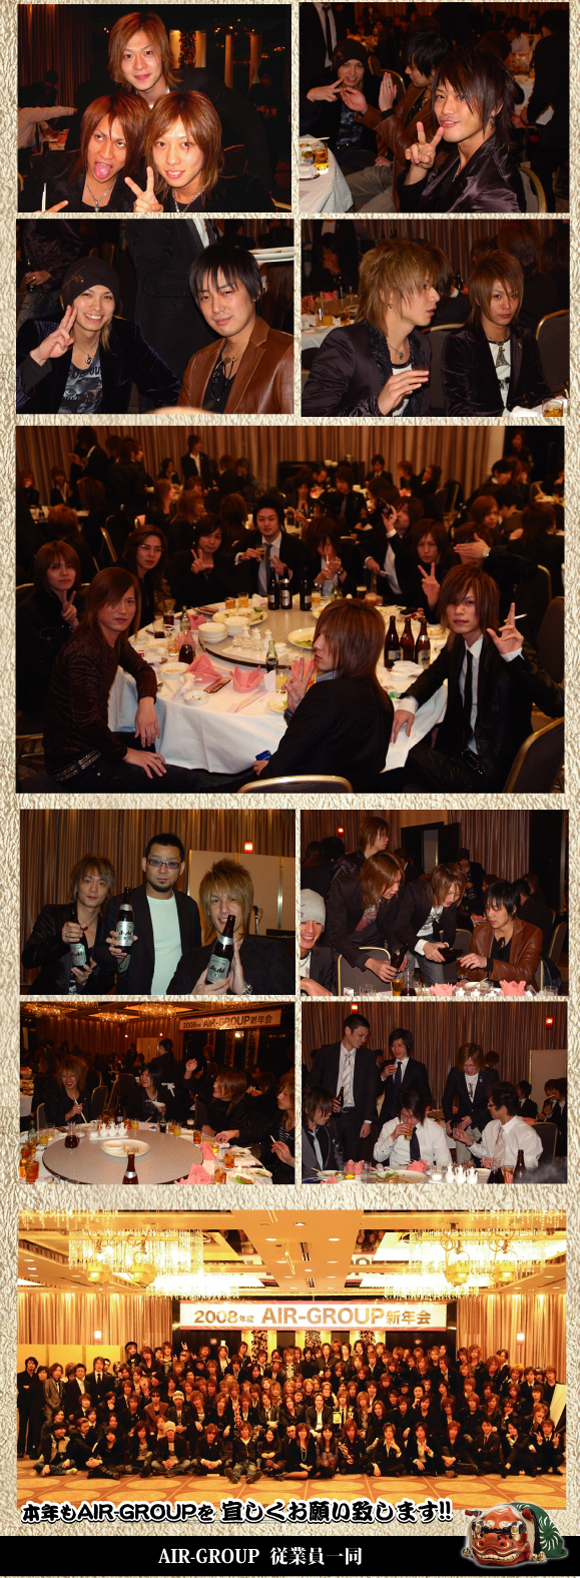 歌舞伎町のホストクラブ、エアーグループが京王プラザホテルにて新年会を行いました。